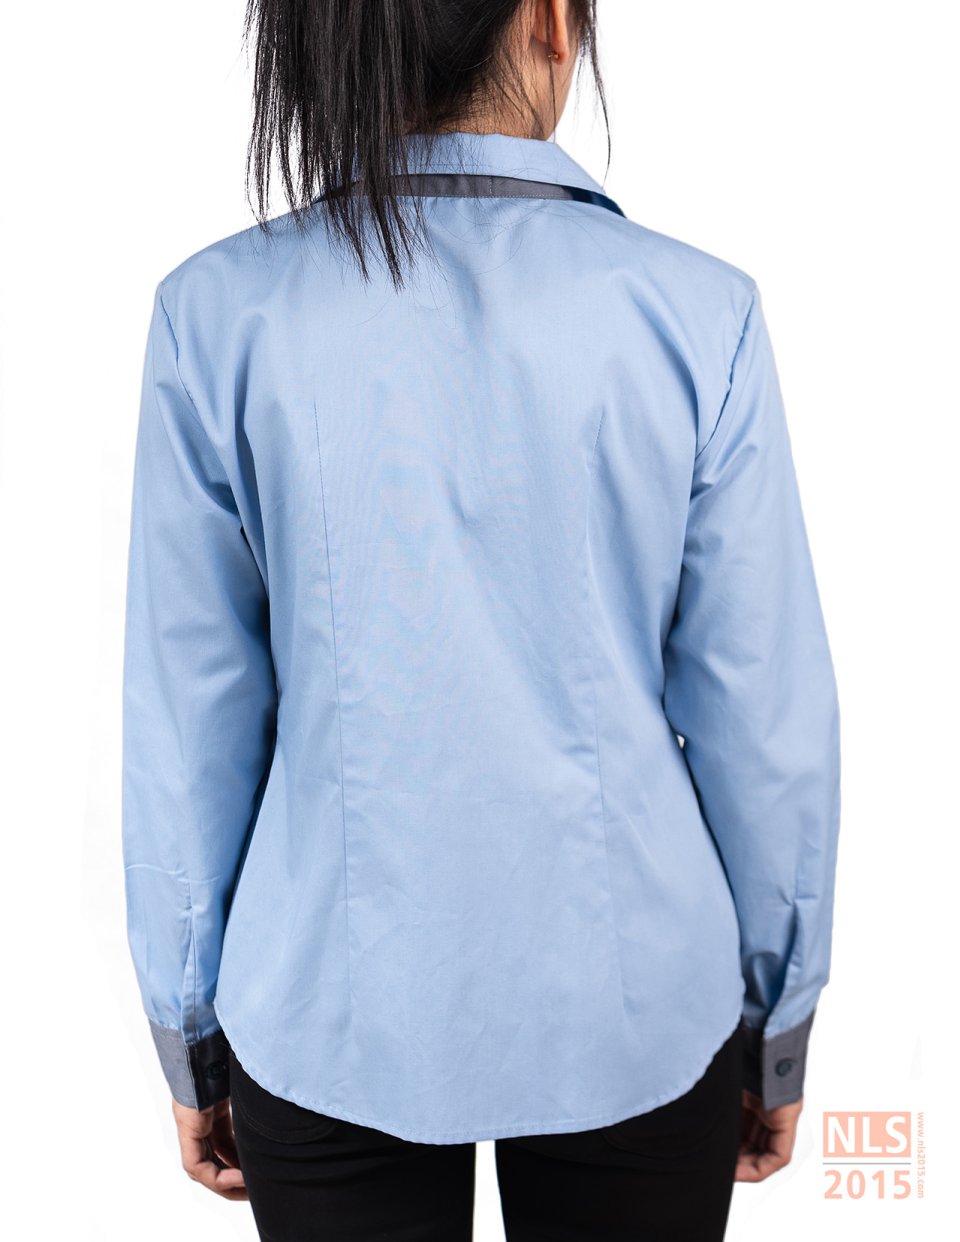 ตัวอย่างเสื้อเชิ้ตพนักงานออฟฟิตบริษัท EVER BRIGHT / นลินสิริ รับตัดเสื้อ รับผลิตเสื้อเชิ้ตพนักงานรูปที่ 